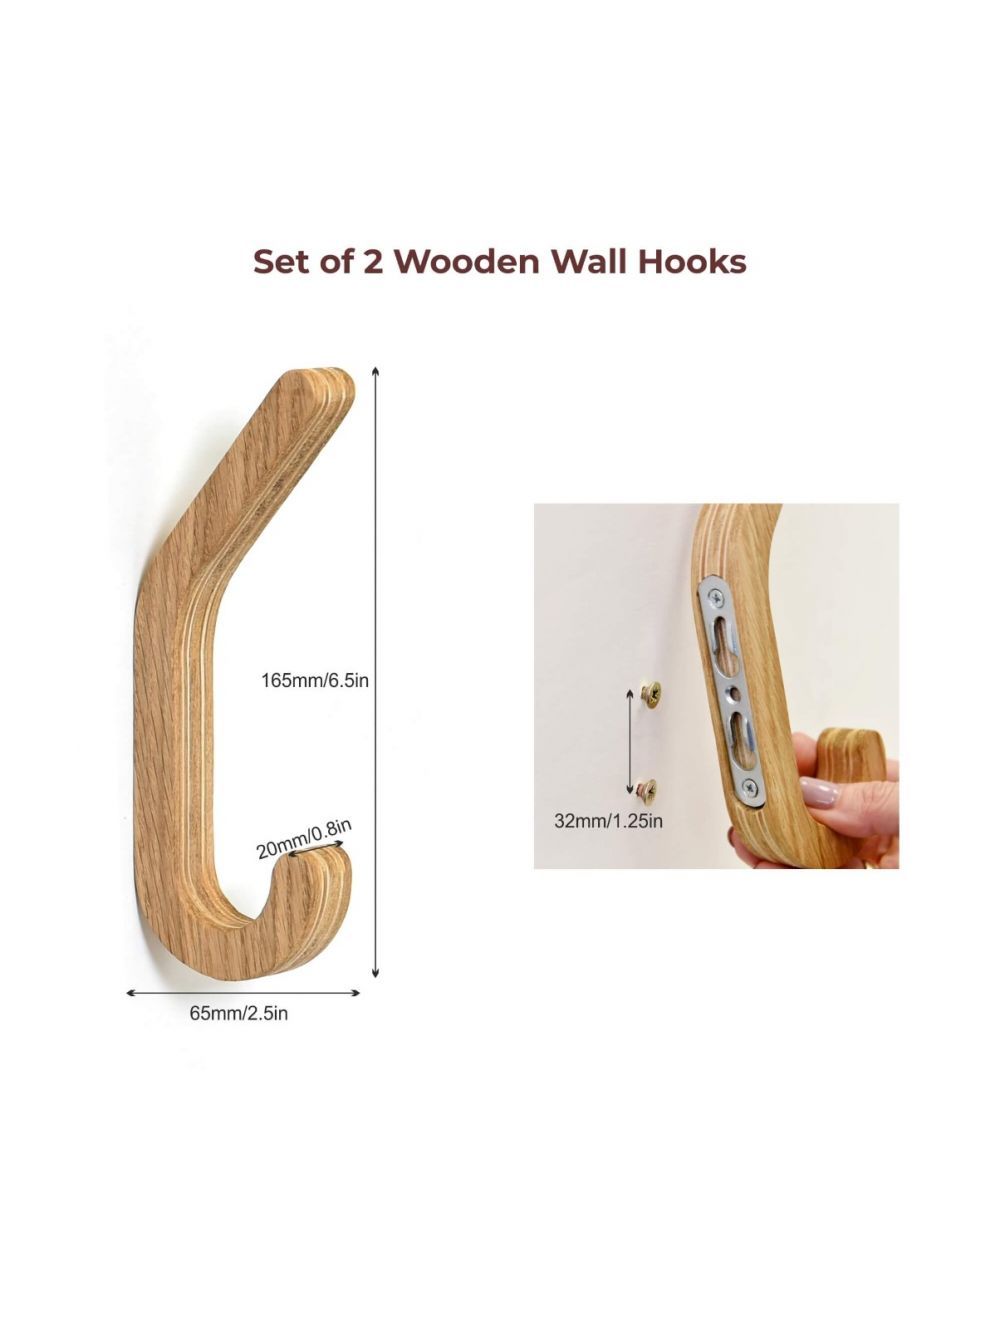 Find here – 2 Pack Oak Wood Hooks Wall